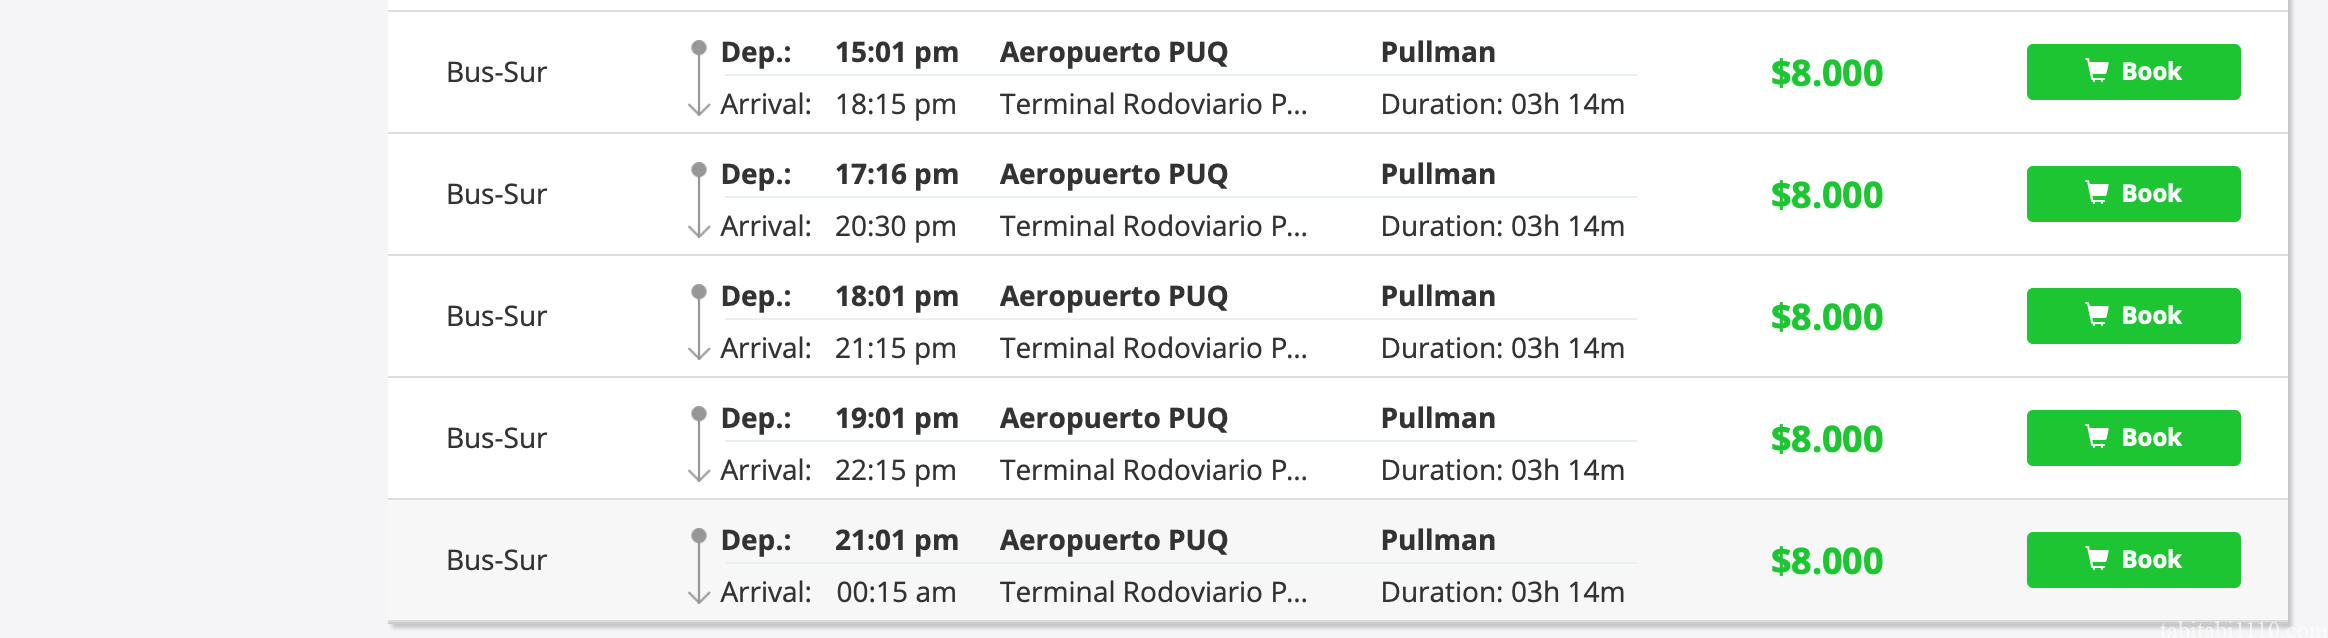 プンタアレナス空港からプエルトナタレスへのバスの時刻表